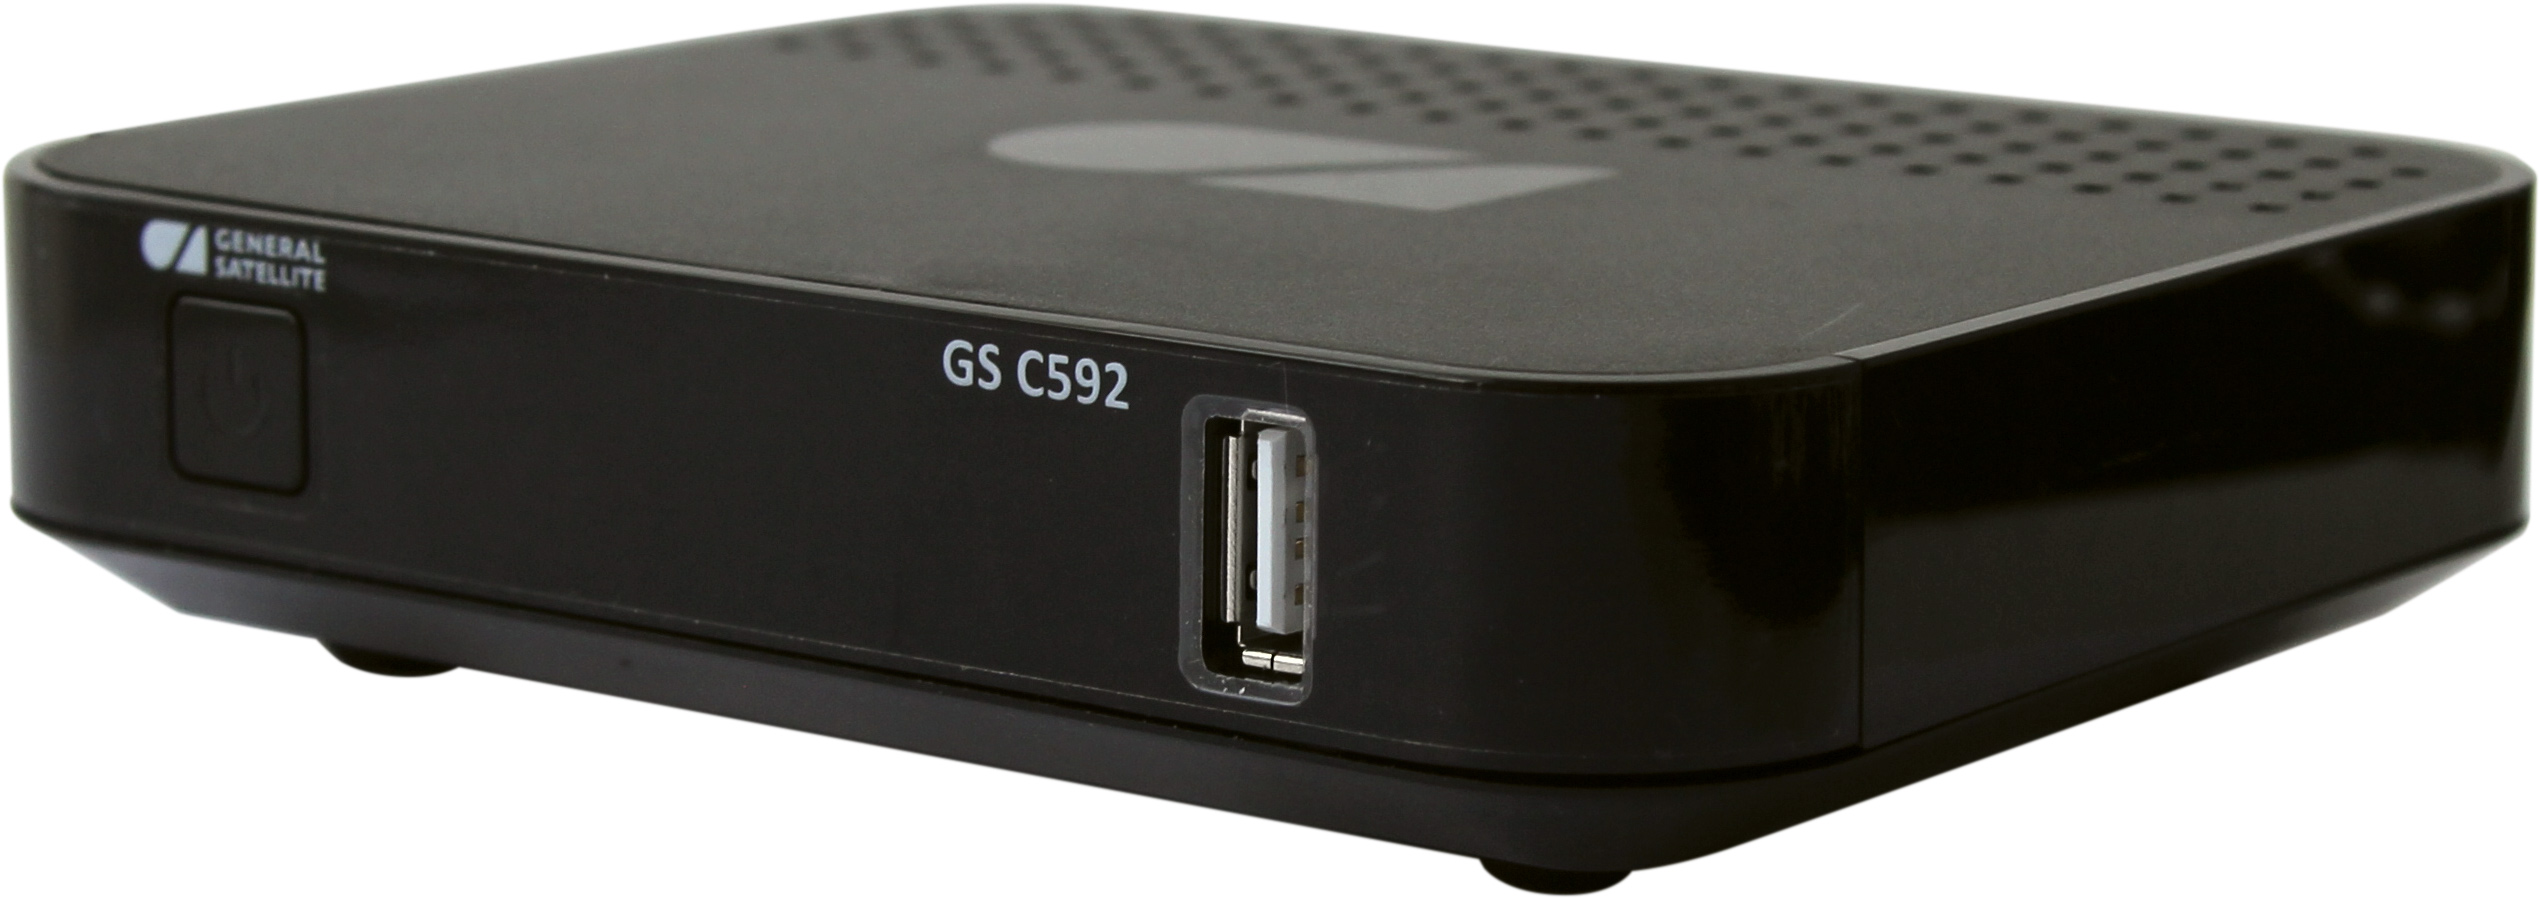 Телевизионный IP-приемник (GS С592) приемник-клиент